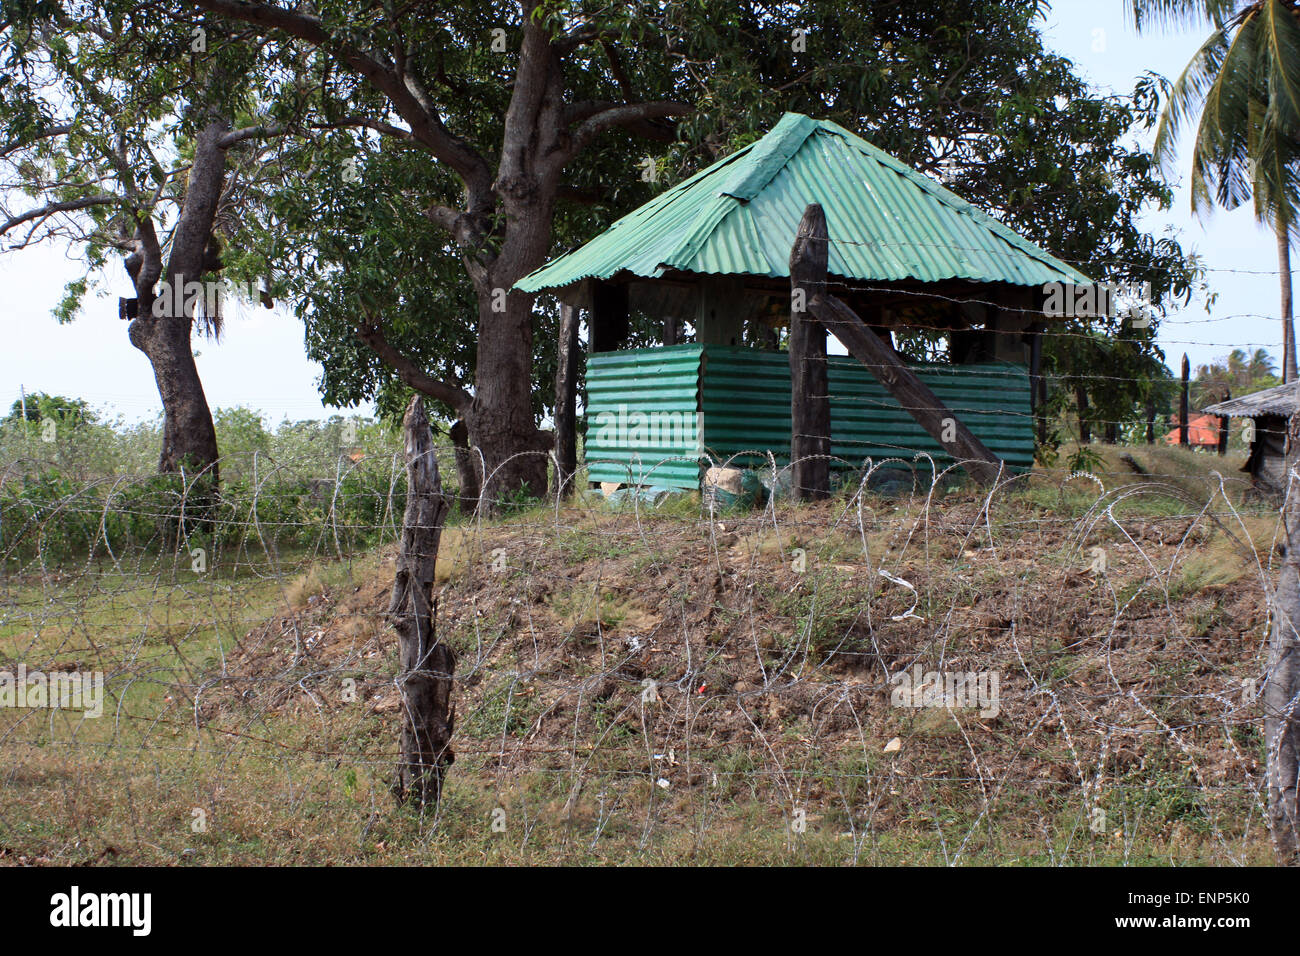 Army post near Kalkudah Bay, east coast of Sri Lanka Stock Photo